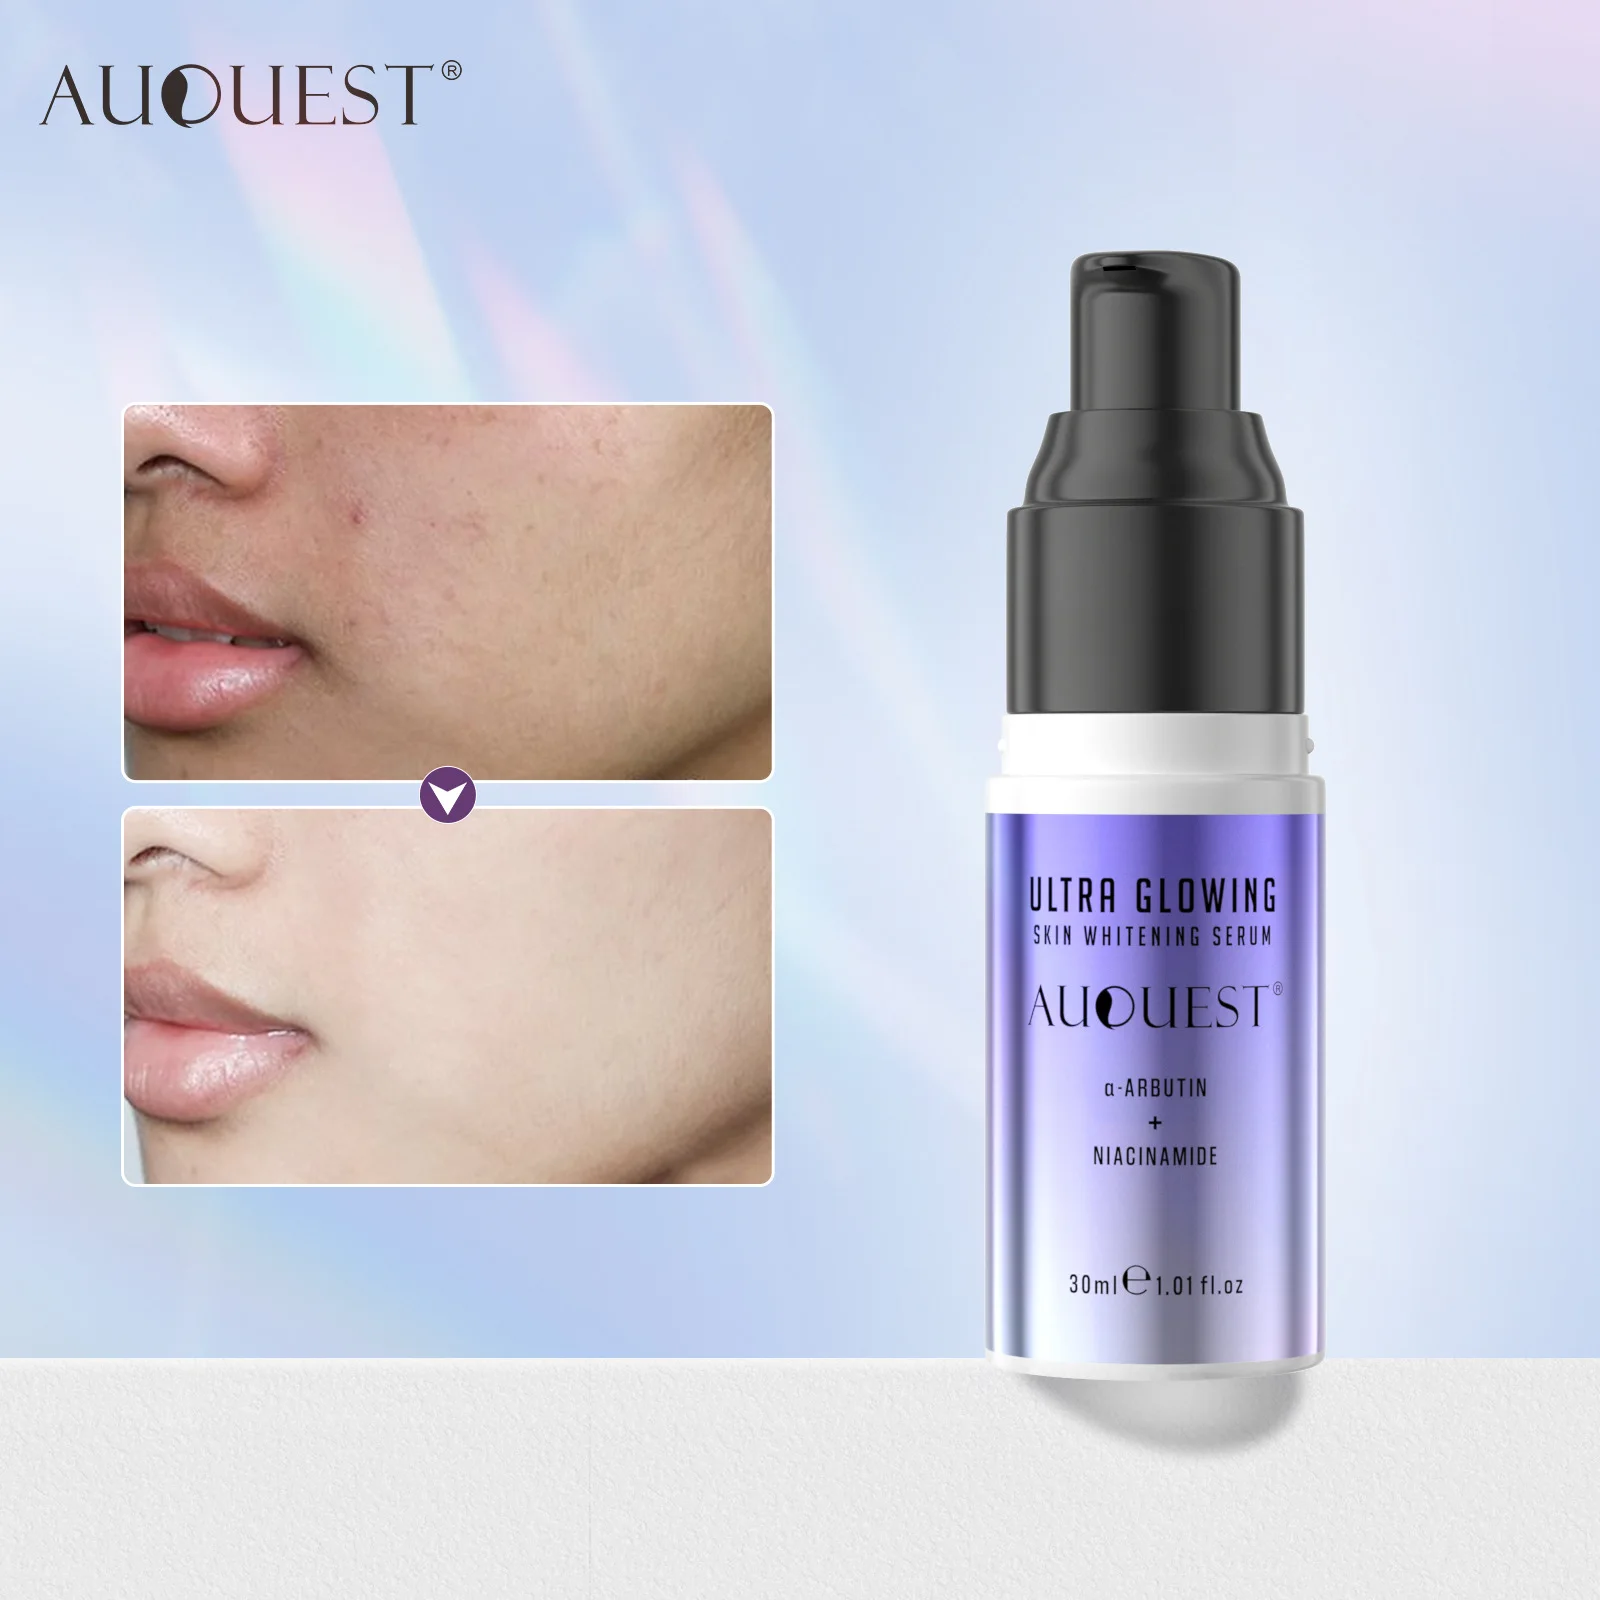 Сыворотка для кожи AuQuest, увлажняющая сыворотка для лица, против старения, подтягивания, отбеливания и увлажнения